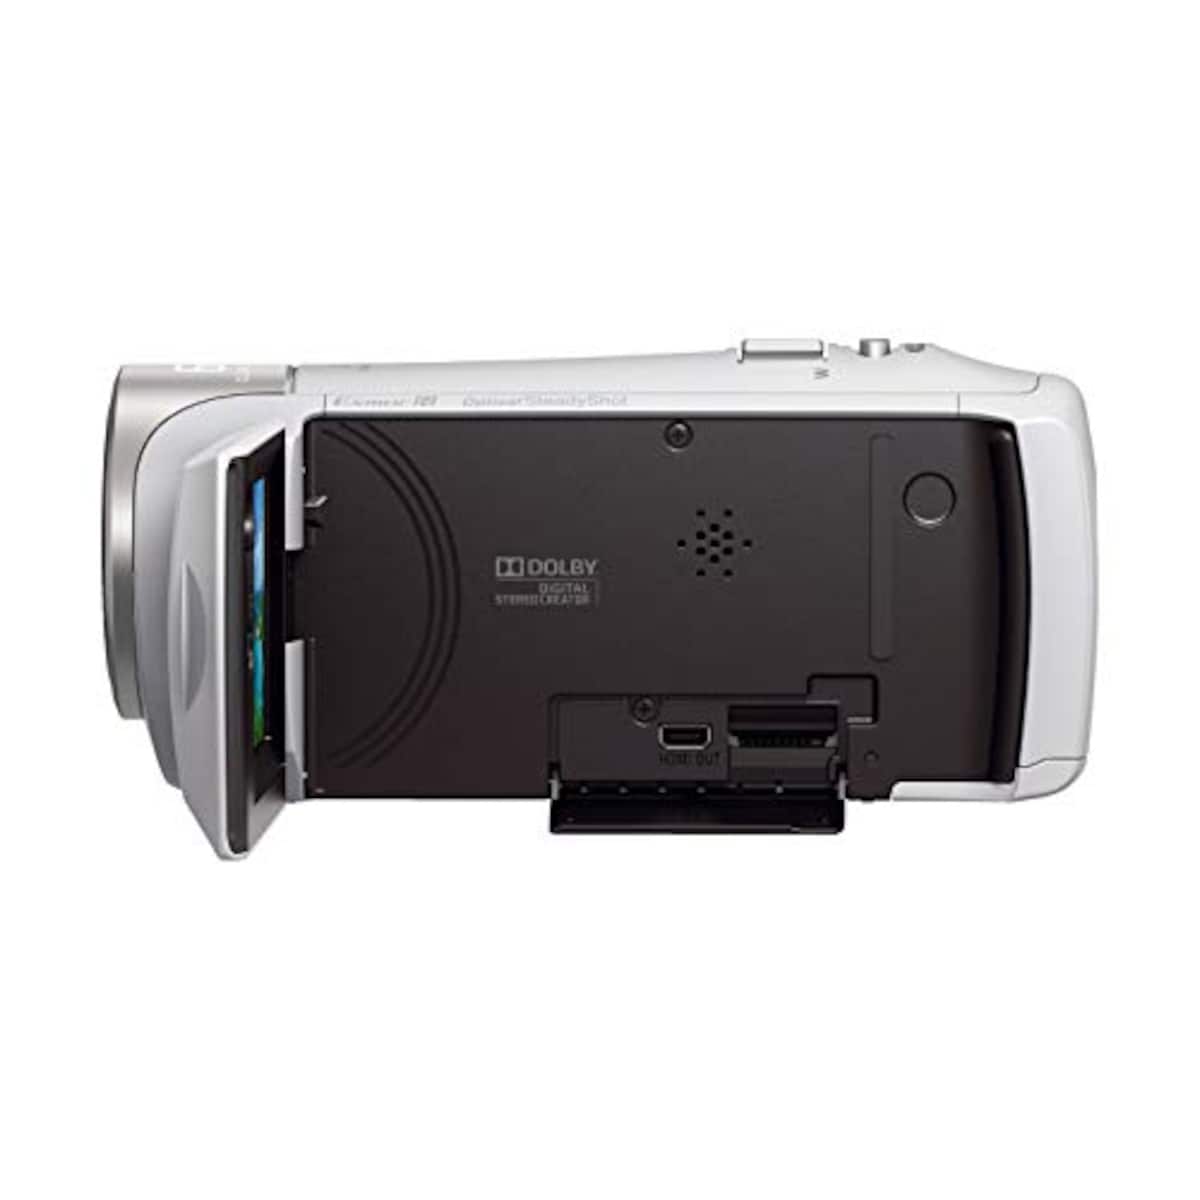  【CX470 と ケース&ストラップ セット】 大切なカメラをキズや汚れからガードしたい方に。HDR-CX470 ホワイト + LCS-MCS2 ライトブラウン画像11 